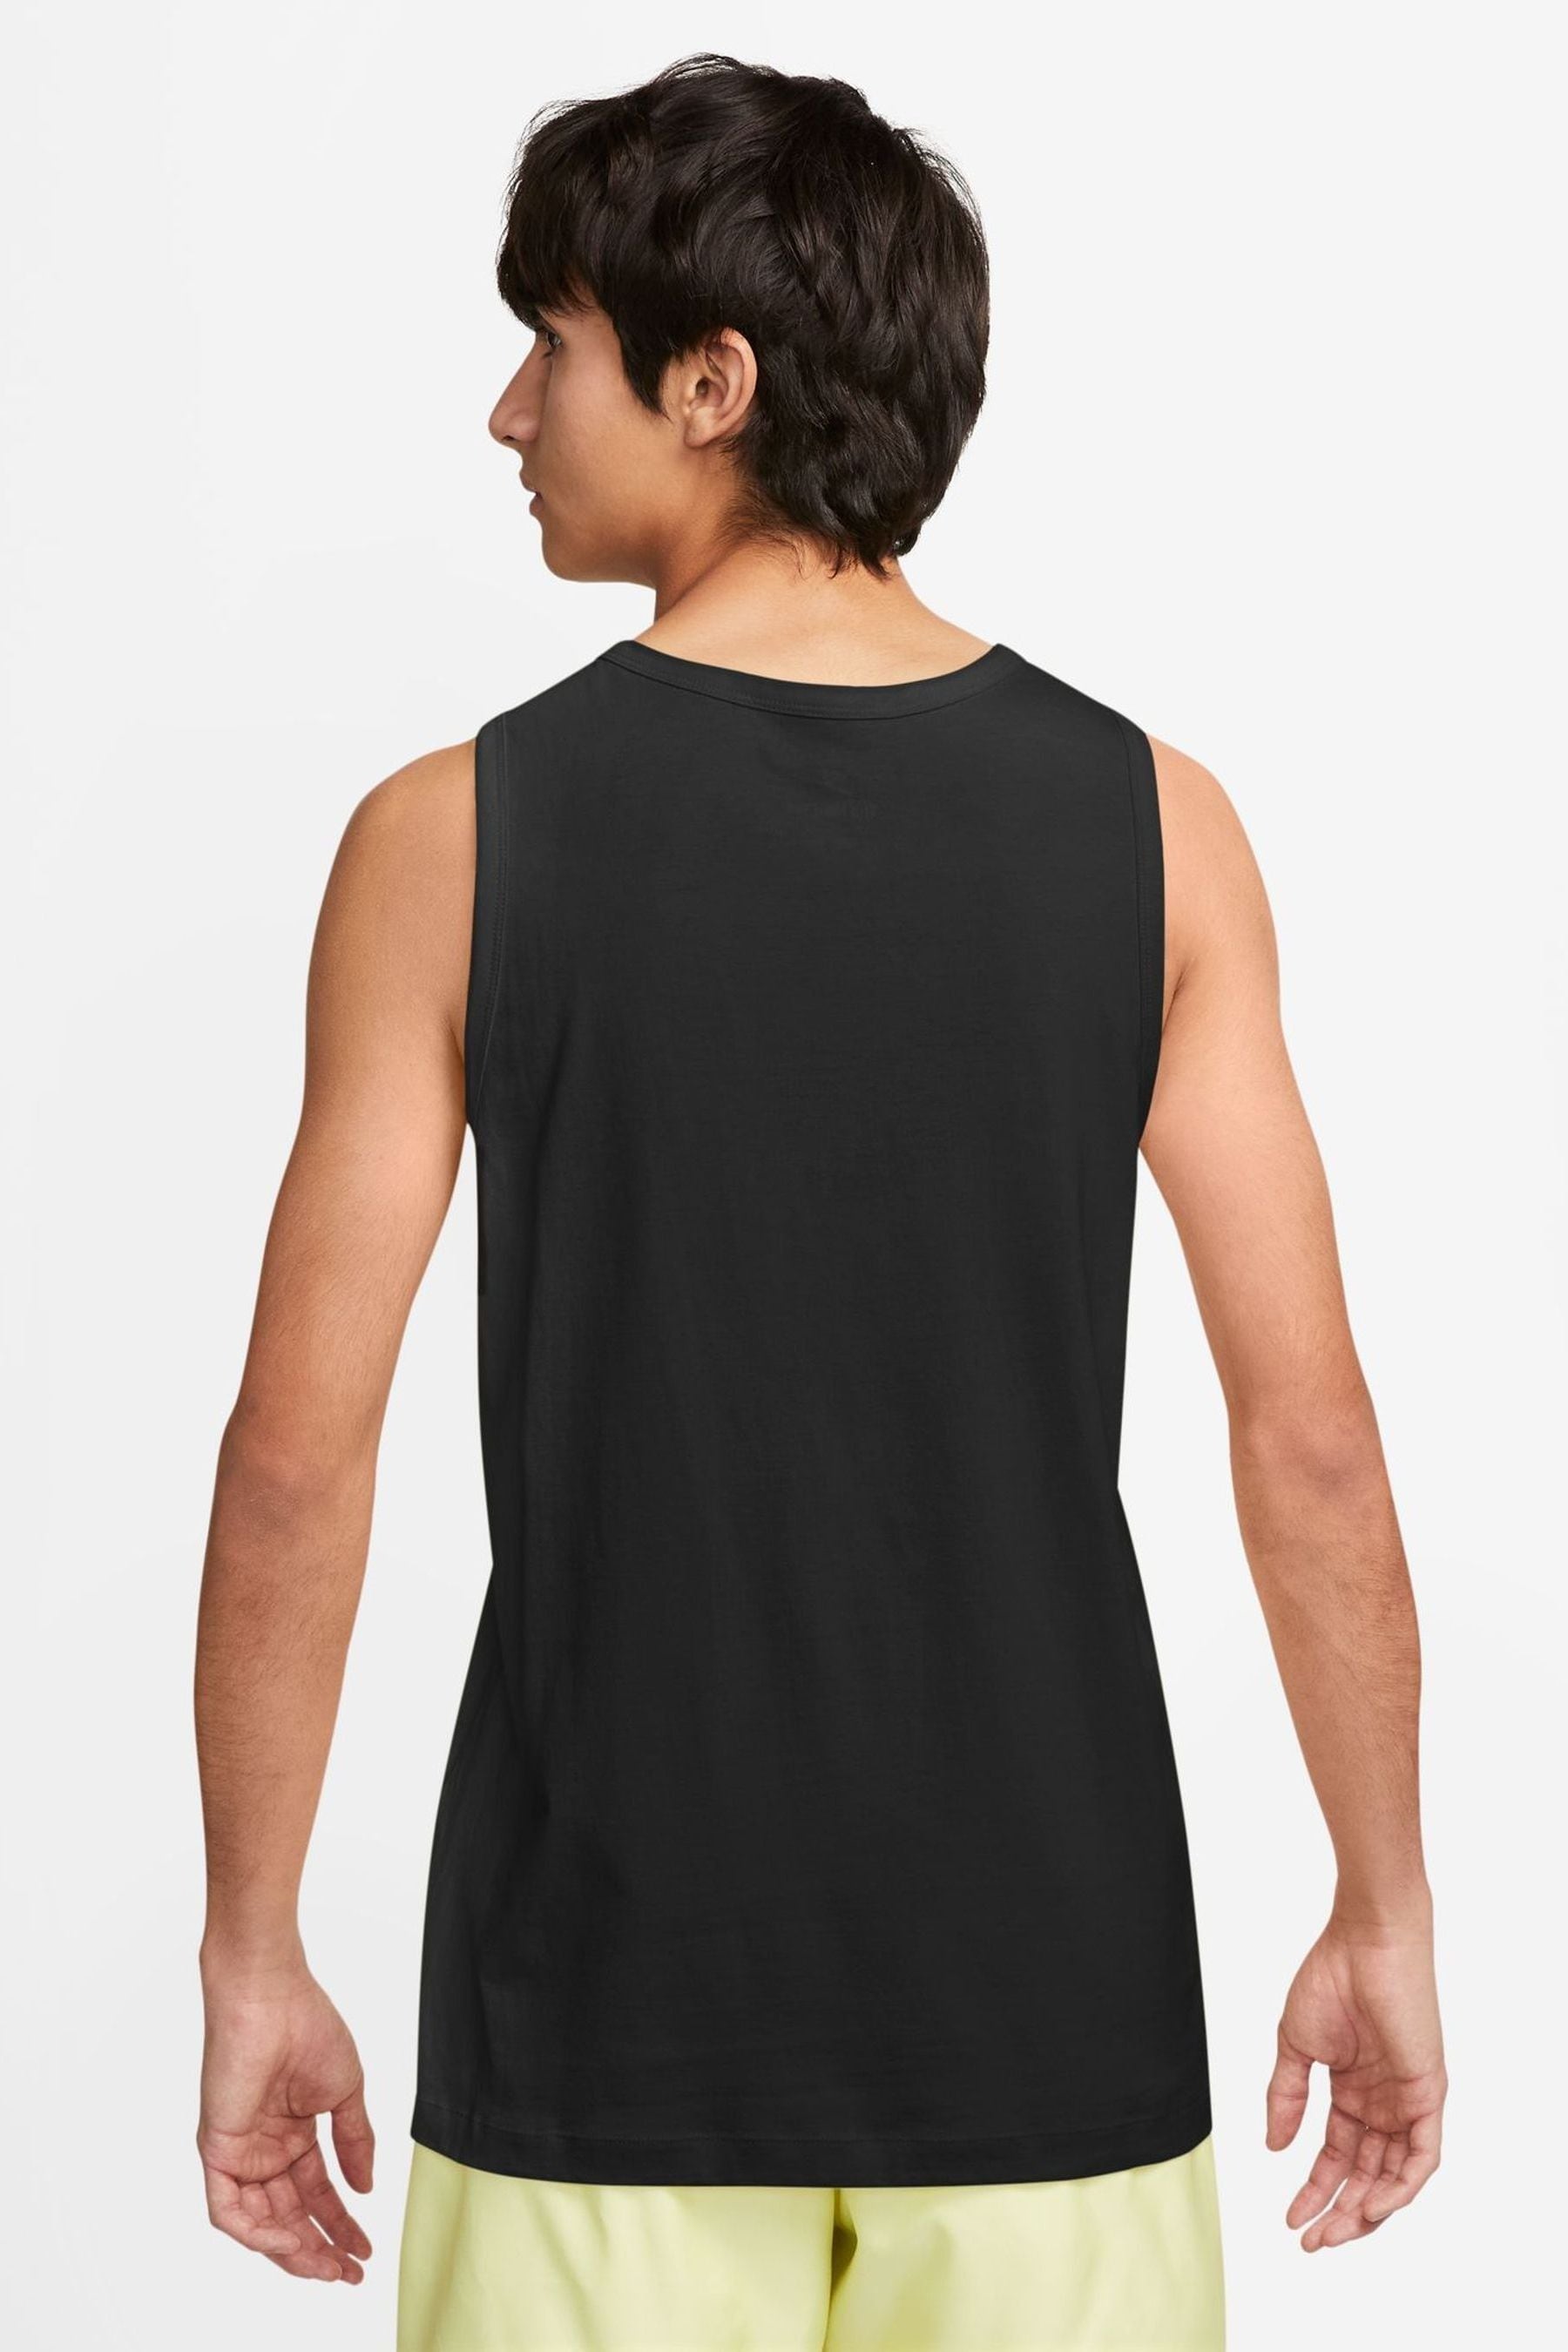 Buy Nike Black Sportswear Vest from the Next UK online shop